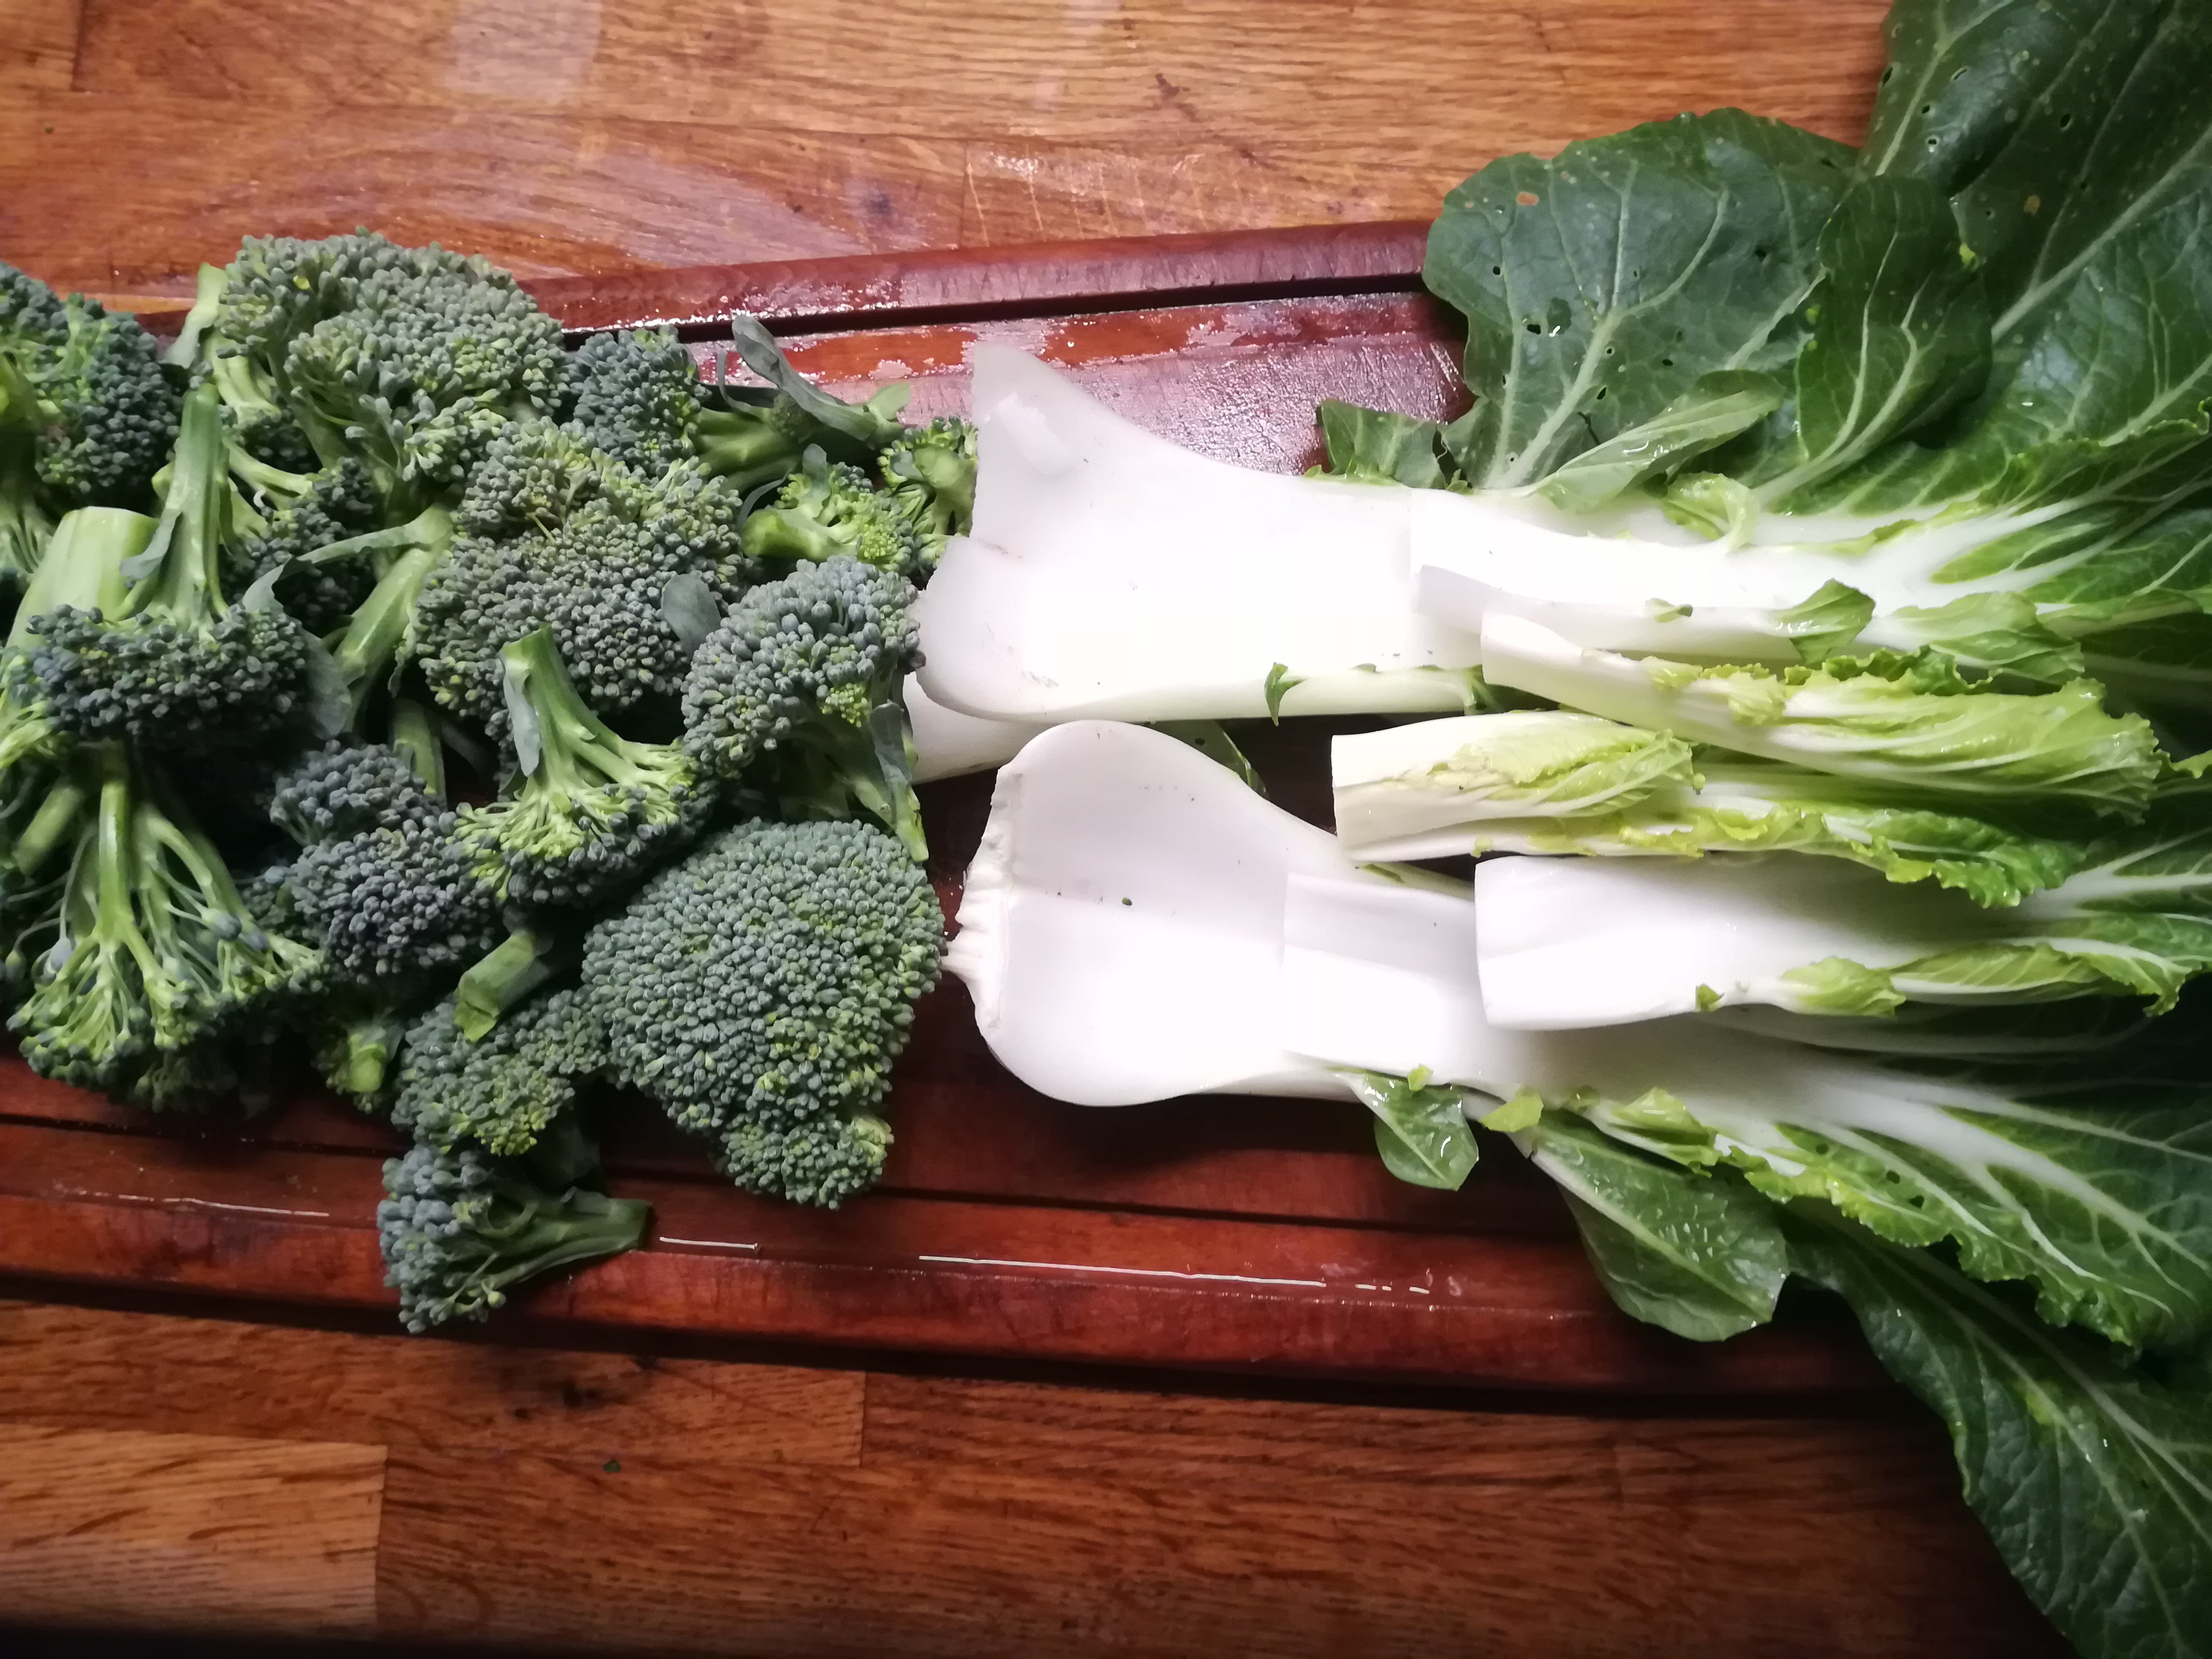 broccolischeutjes en paksoi-blad